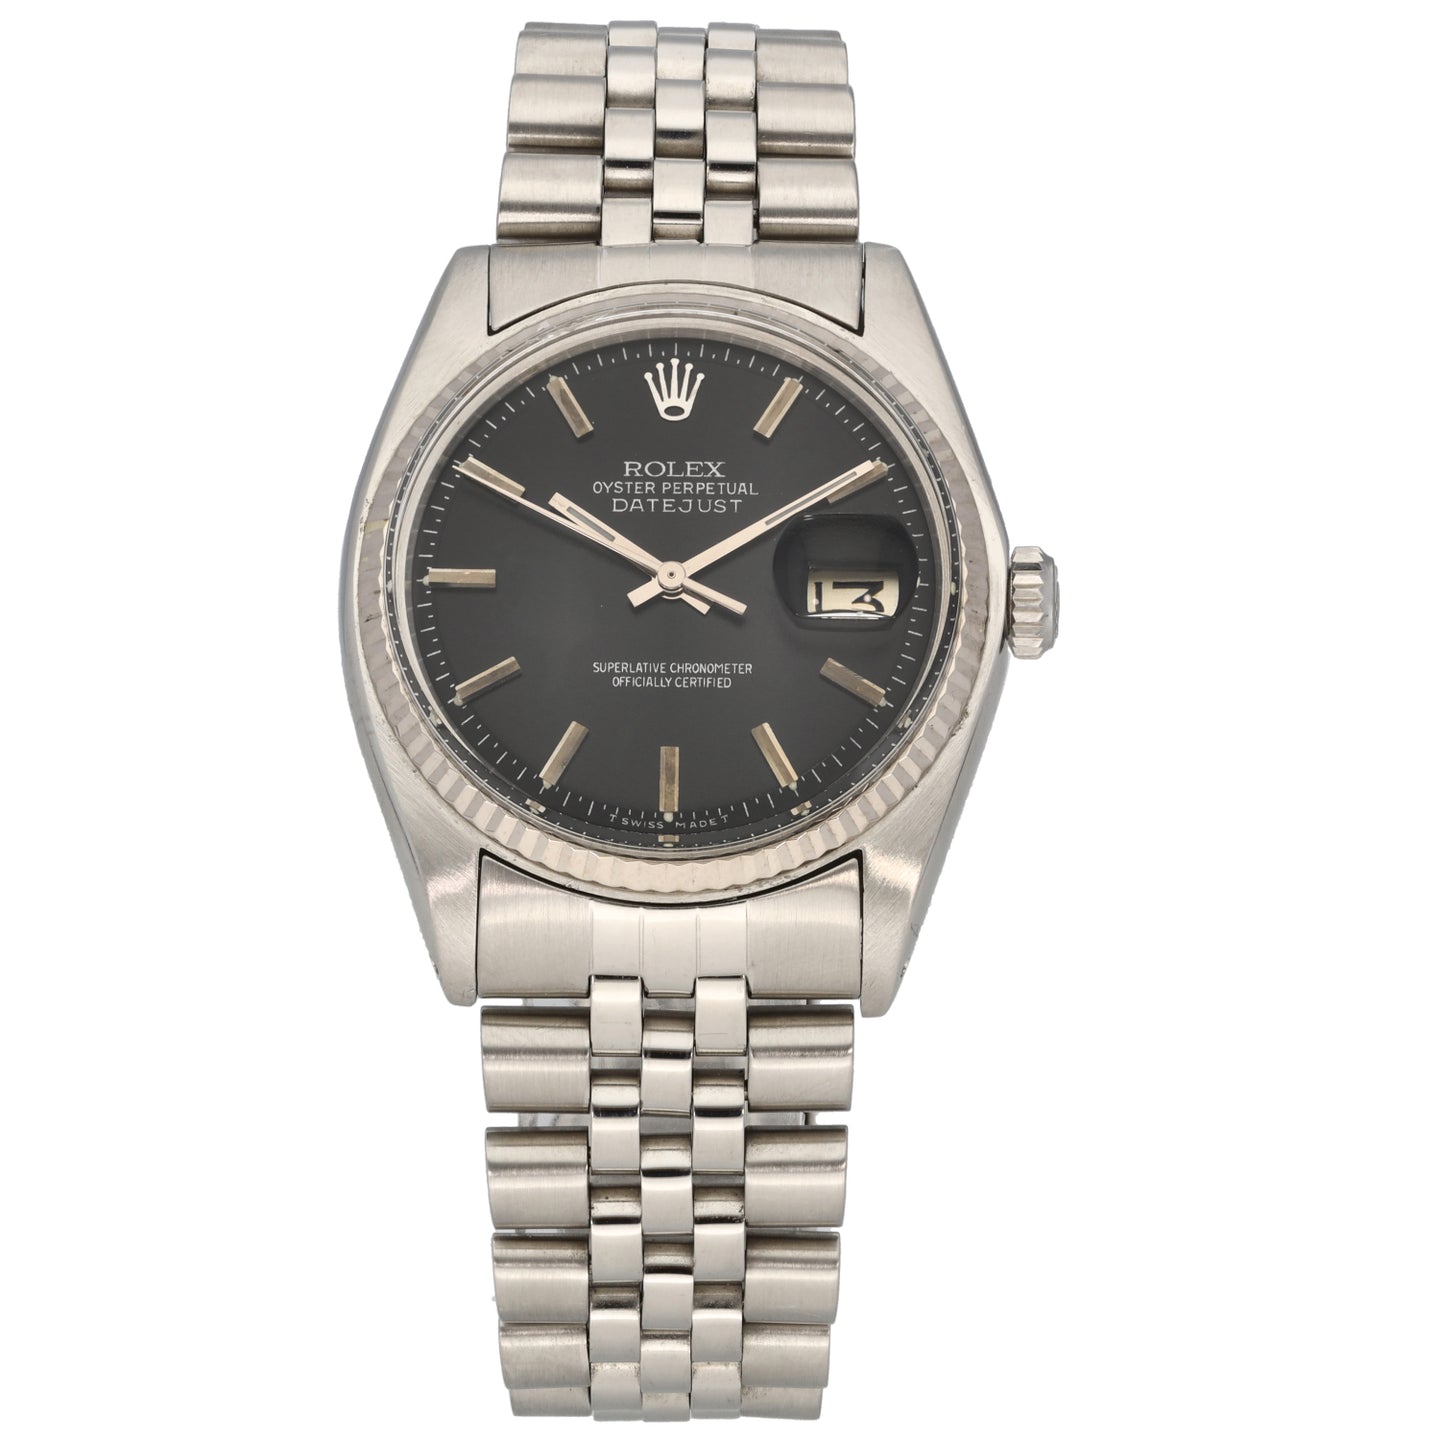 Rolex Datejust 1601 36mm Stainless Steel Watch